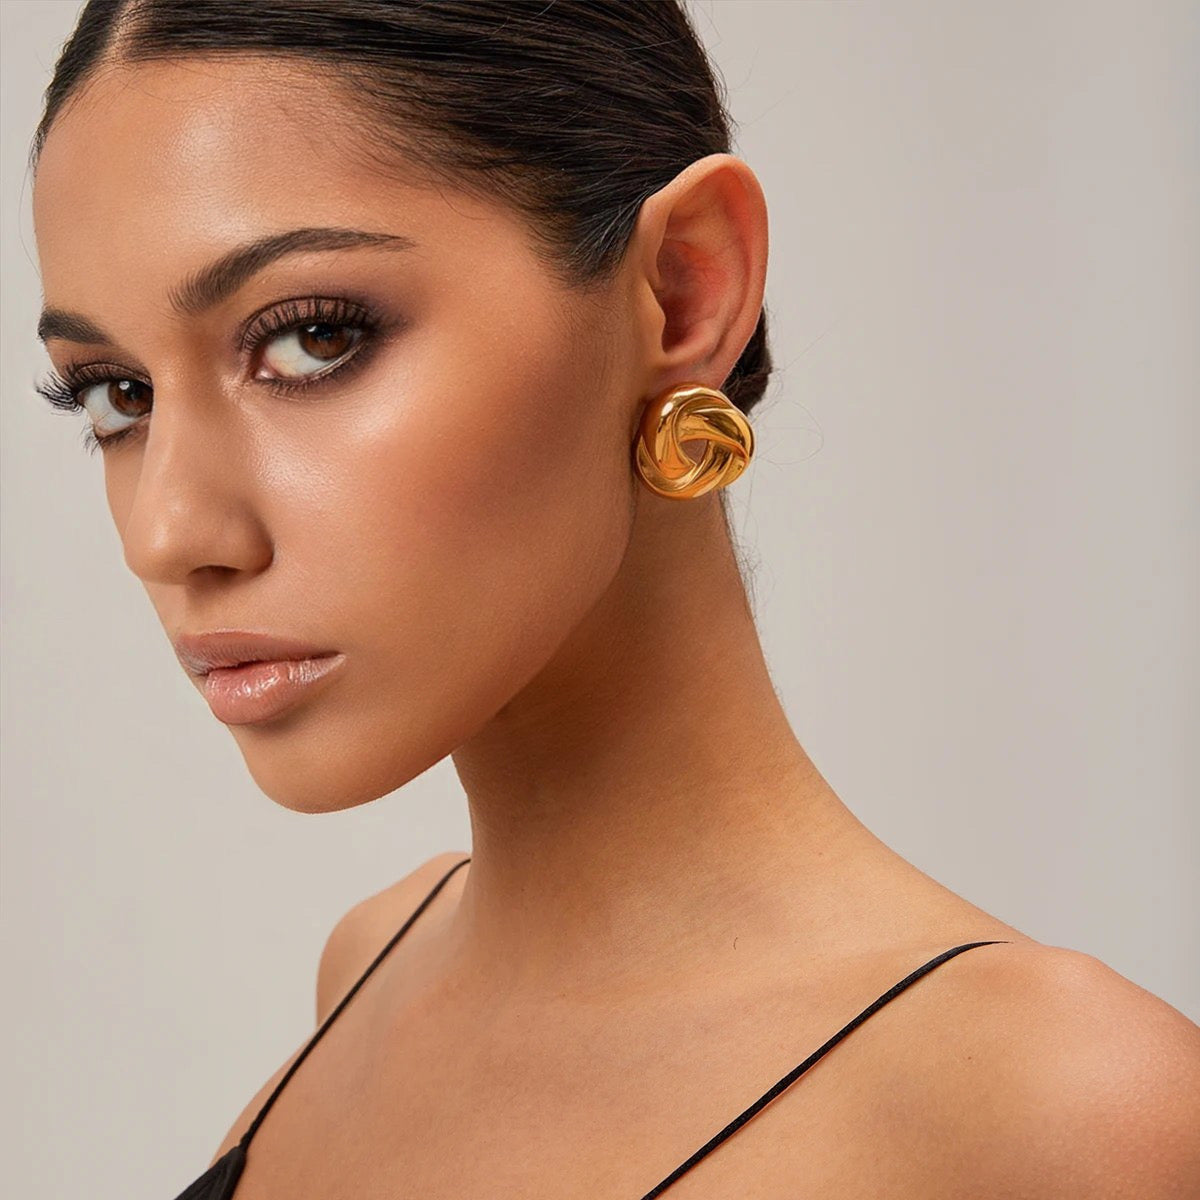 WIND earrings